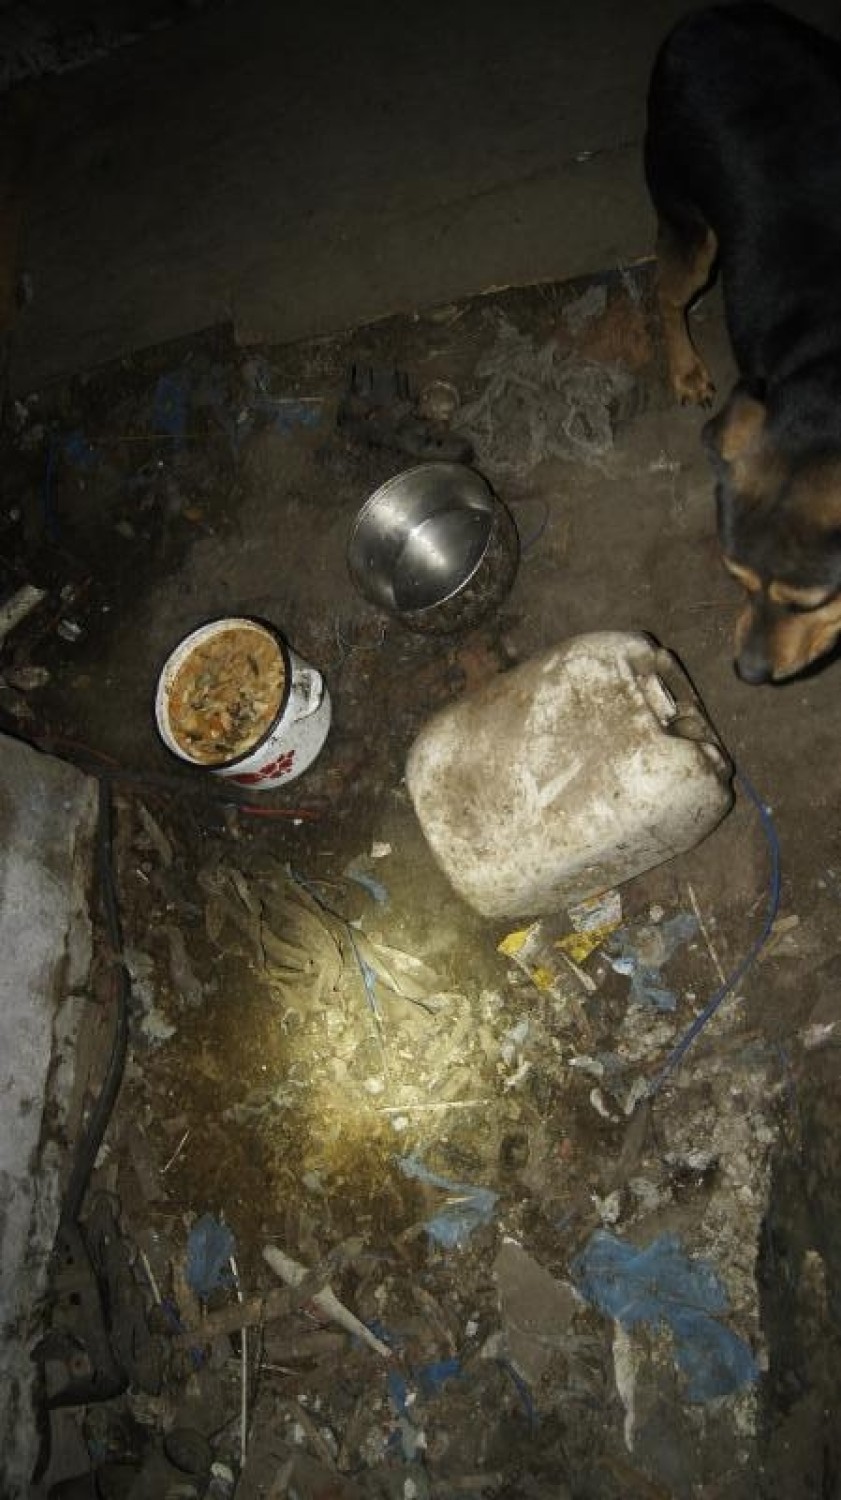 Na kilka lat zamknęli psa w piwnicy. Żył pośród śmieci i własnych odchodów [ZDJĘCIA]